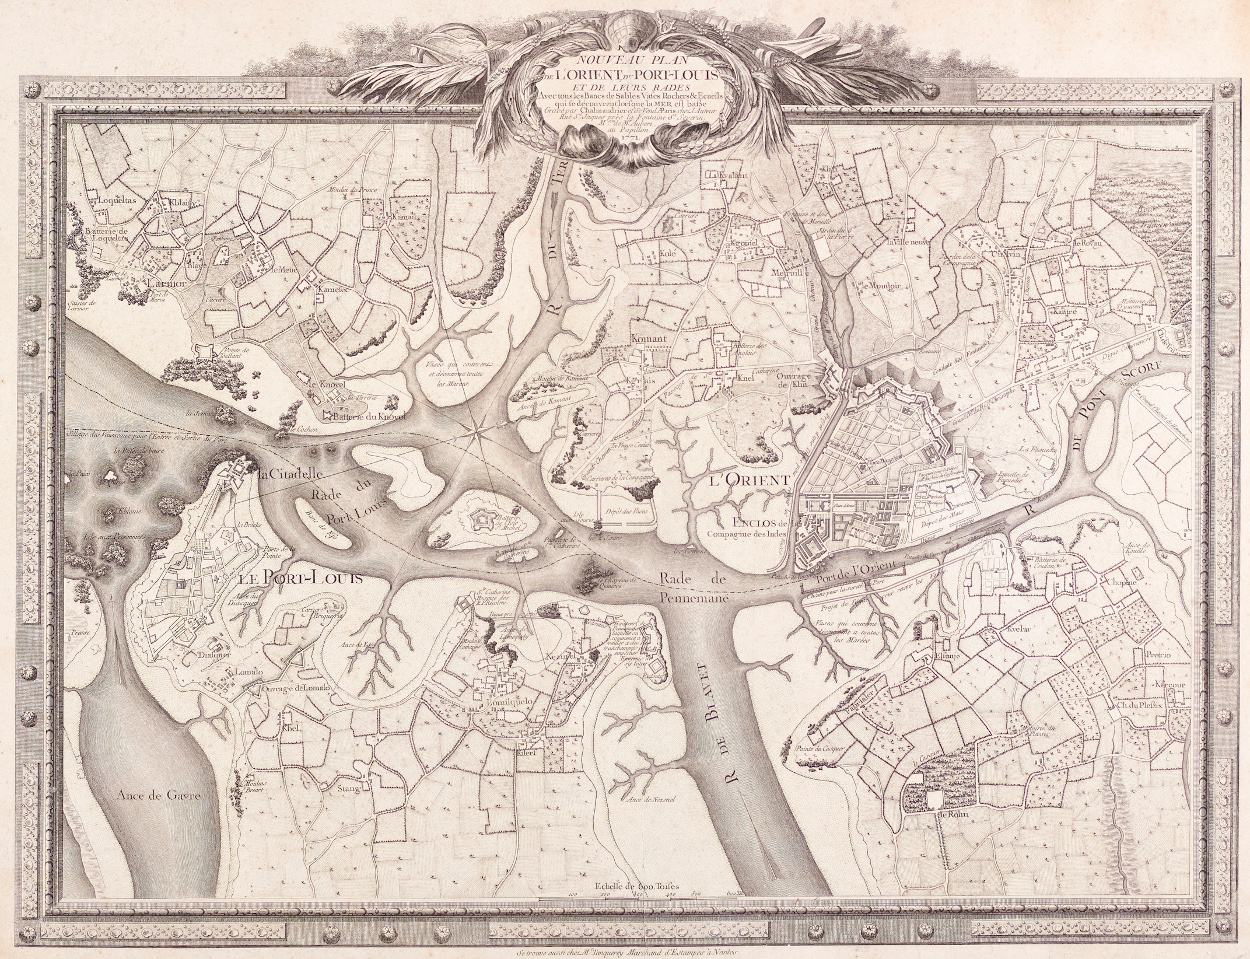 Nouveau plan de Lorient du Port-Louis et de leurs rades, 1771. Musée de Bretagne: 2018.0000.1283.